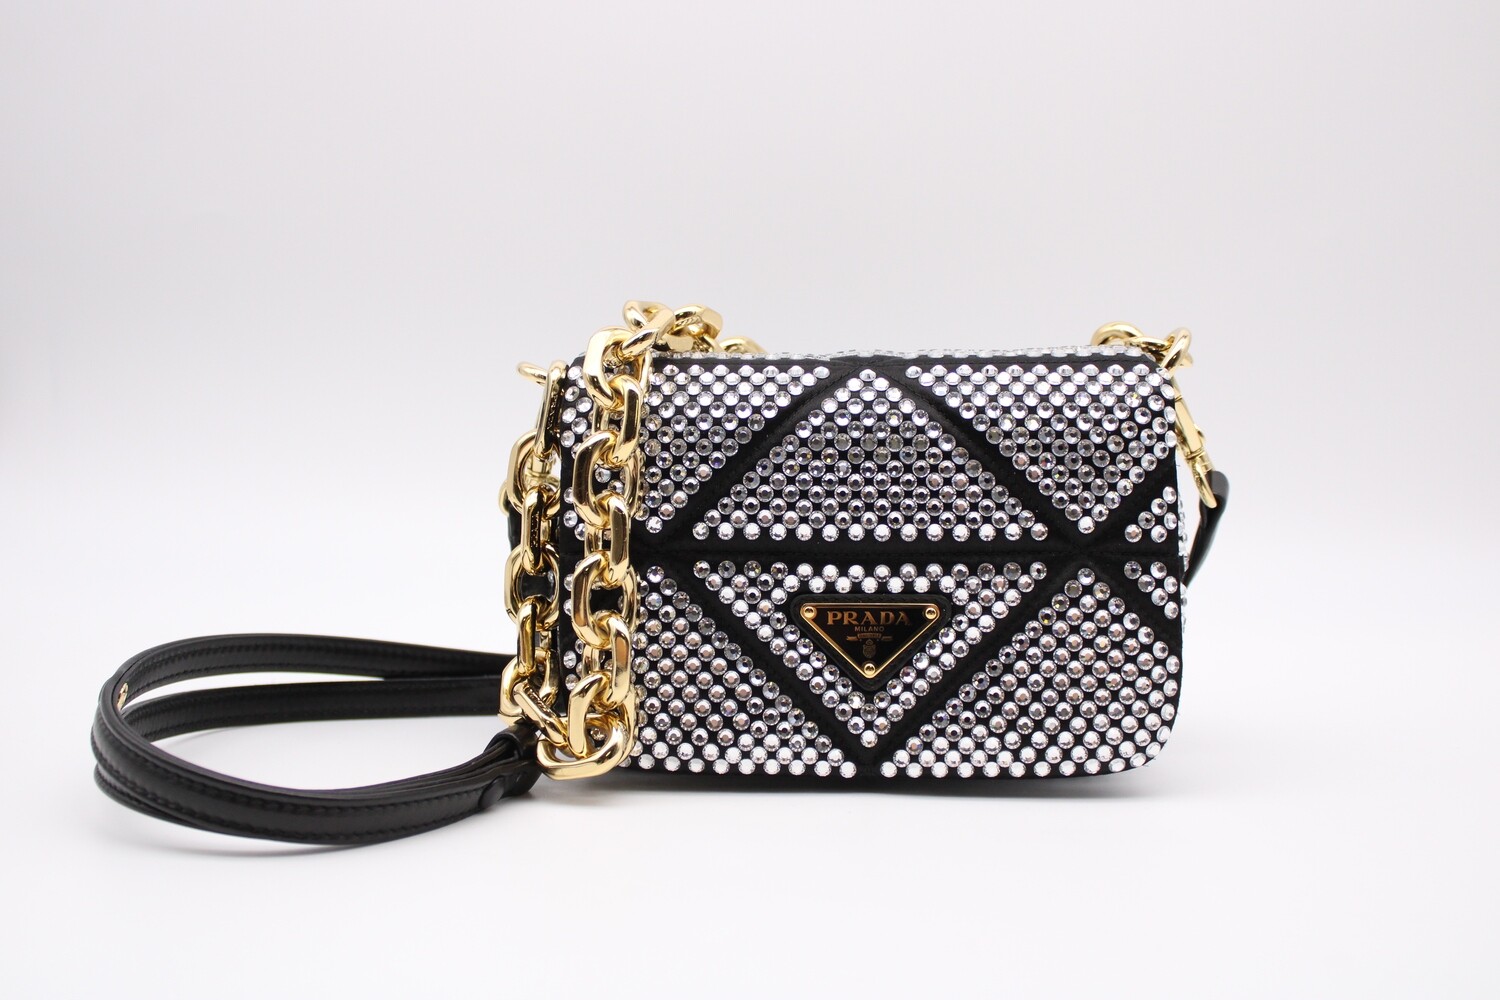 Prada Crystal Mini Bag with Chain, Black, New in Box MA001